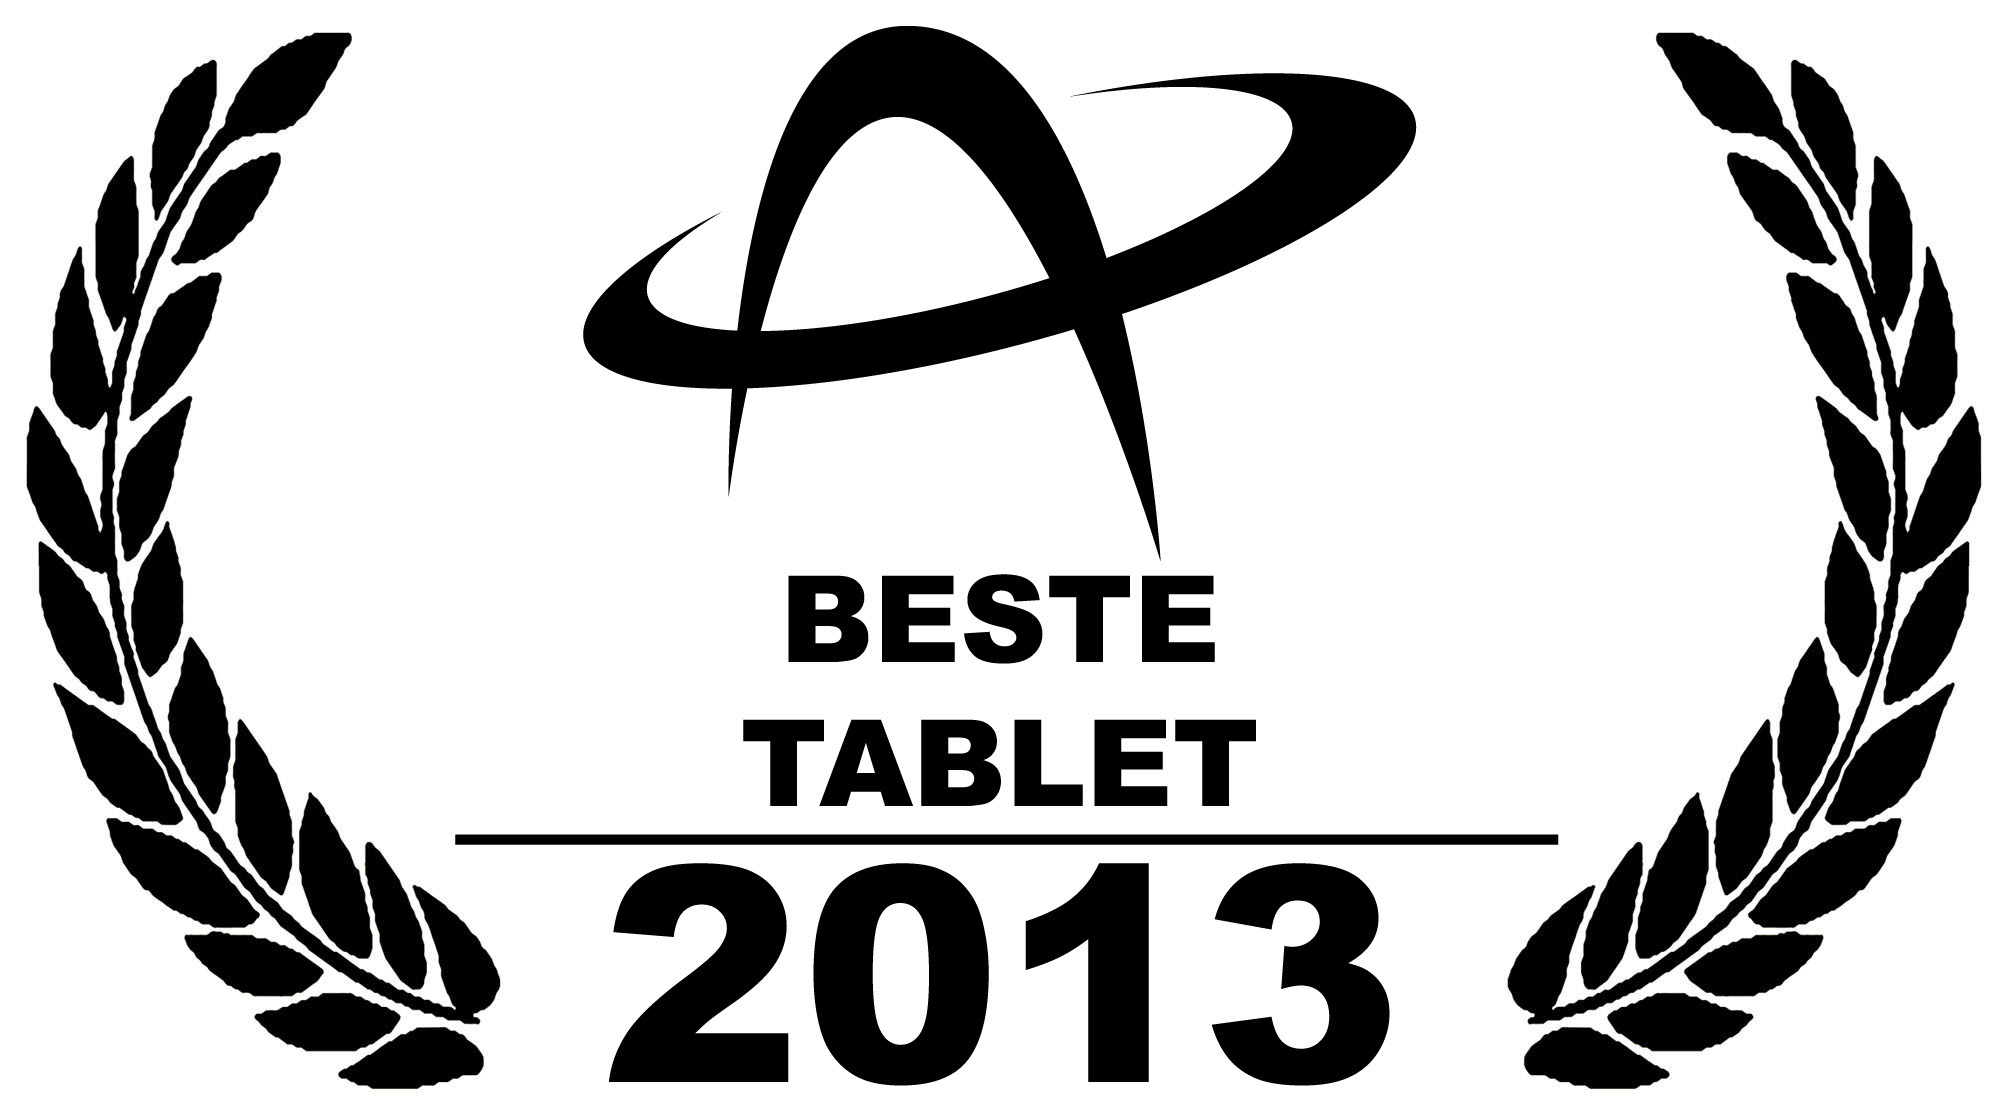 De beste tablets van 2013 (nummer 5): LG G Pad 8.3